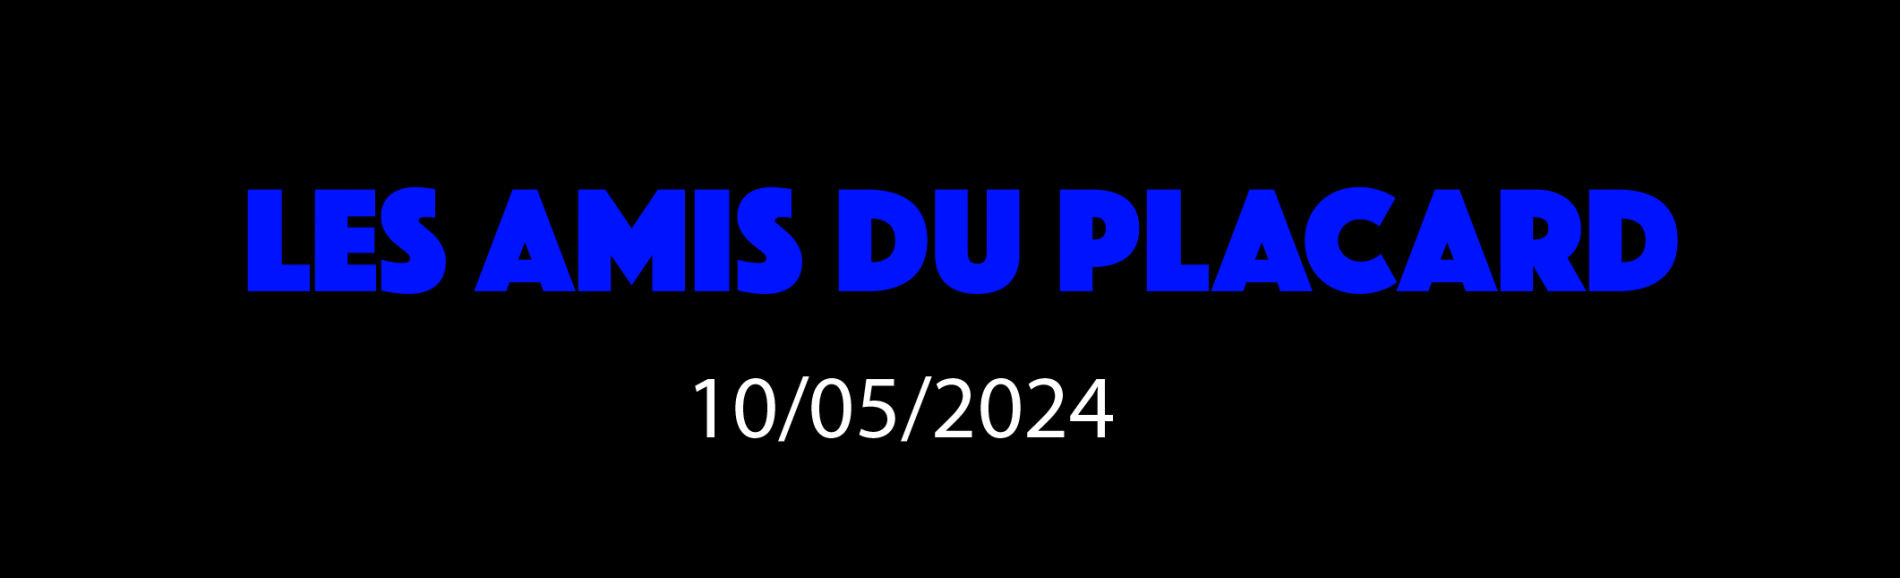 LES AMIS DU PLACARD - 10/05/2024